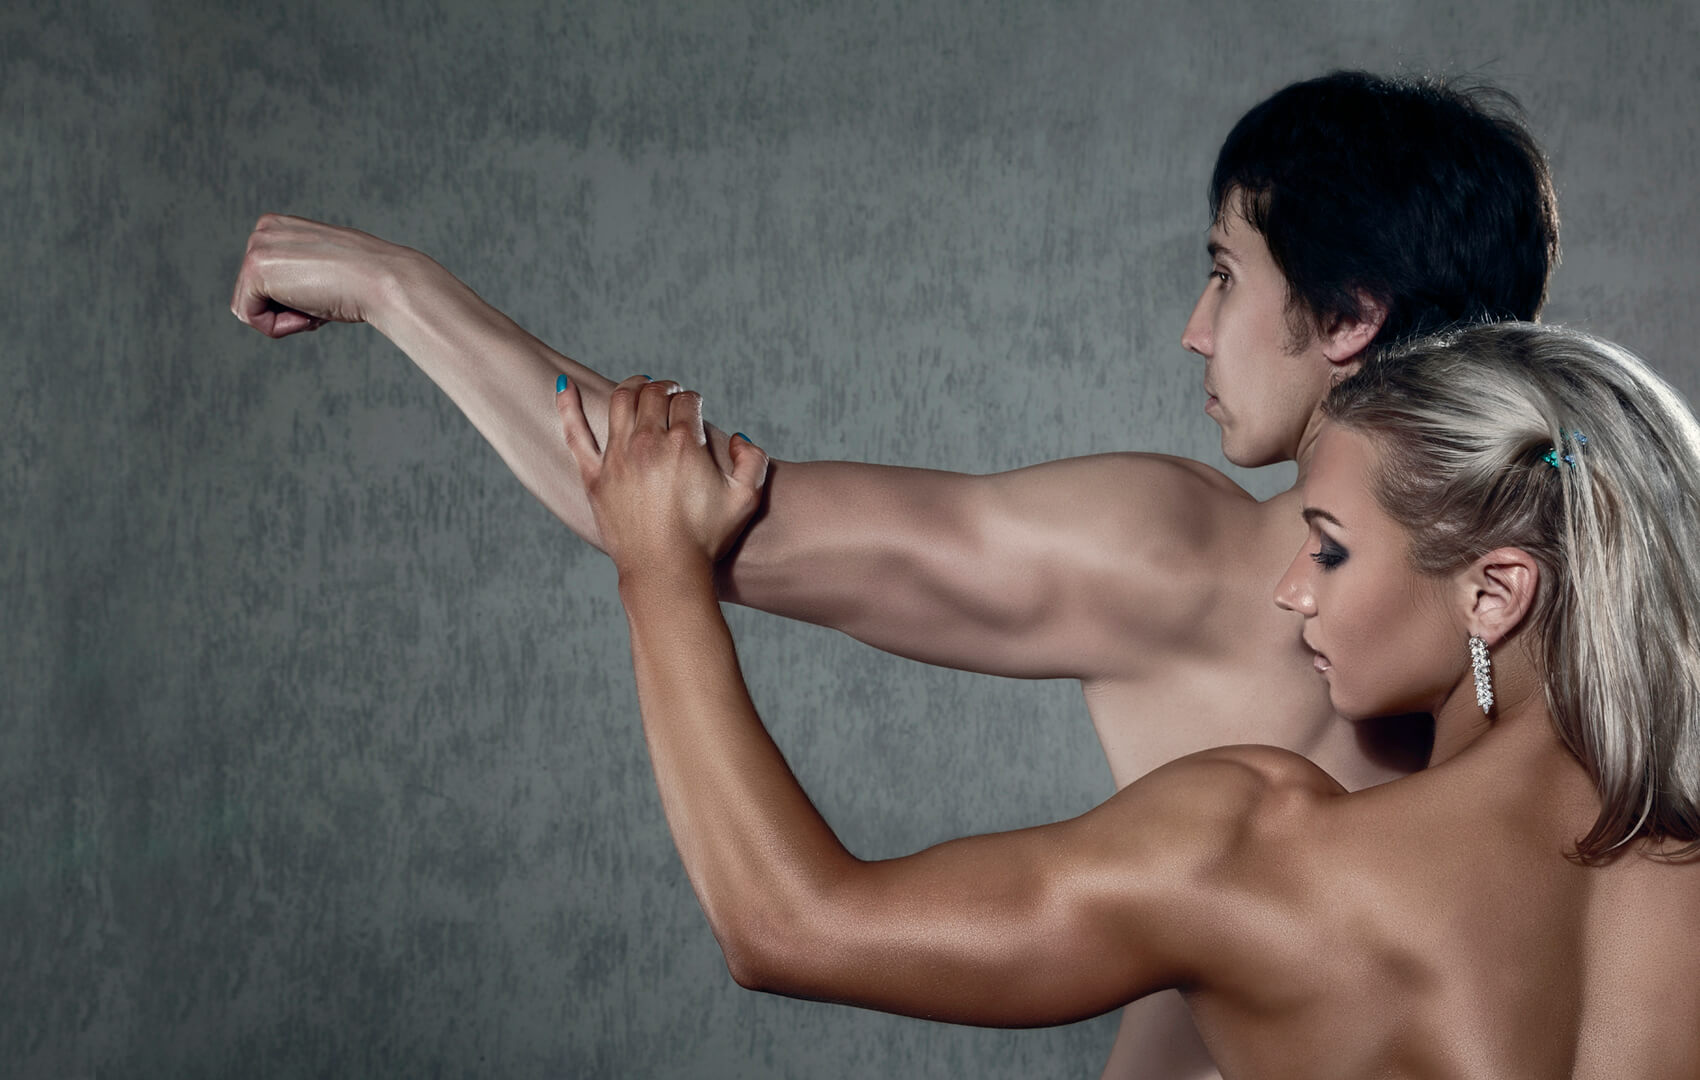 Erotic women lifting men